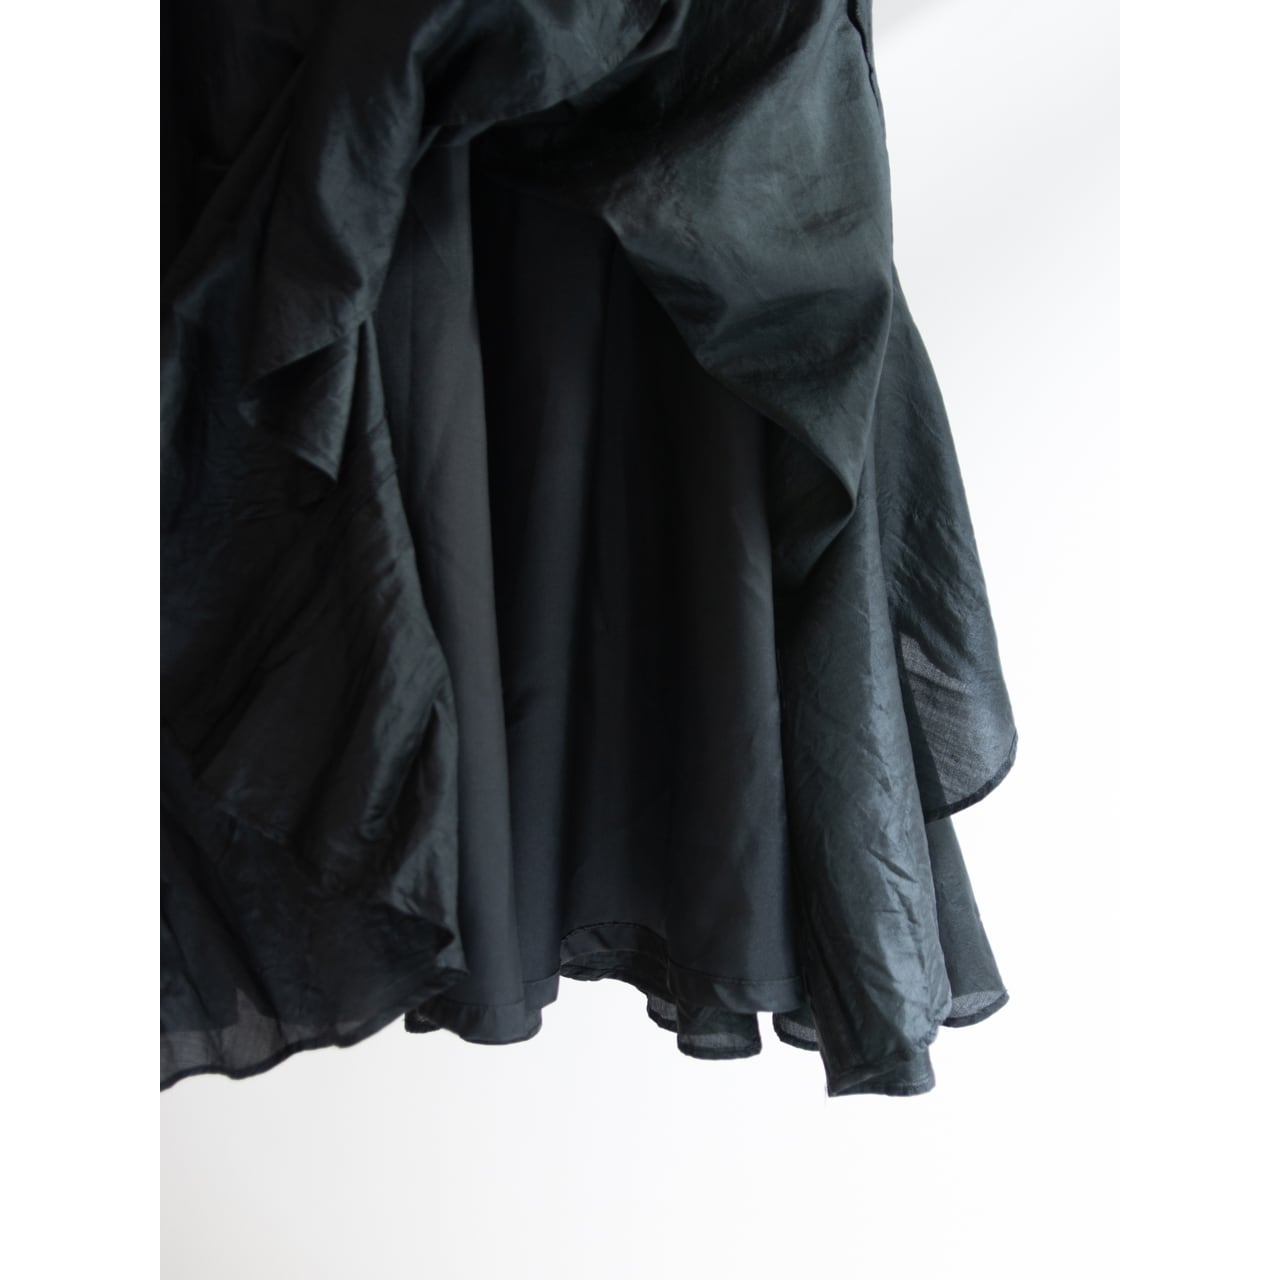 KENZO JAP】Made in Japan 70-80's 100% Silk Flare Skirt（ケンゾー